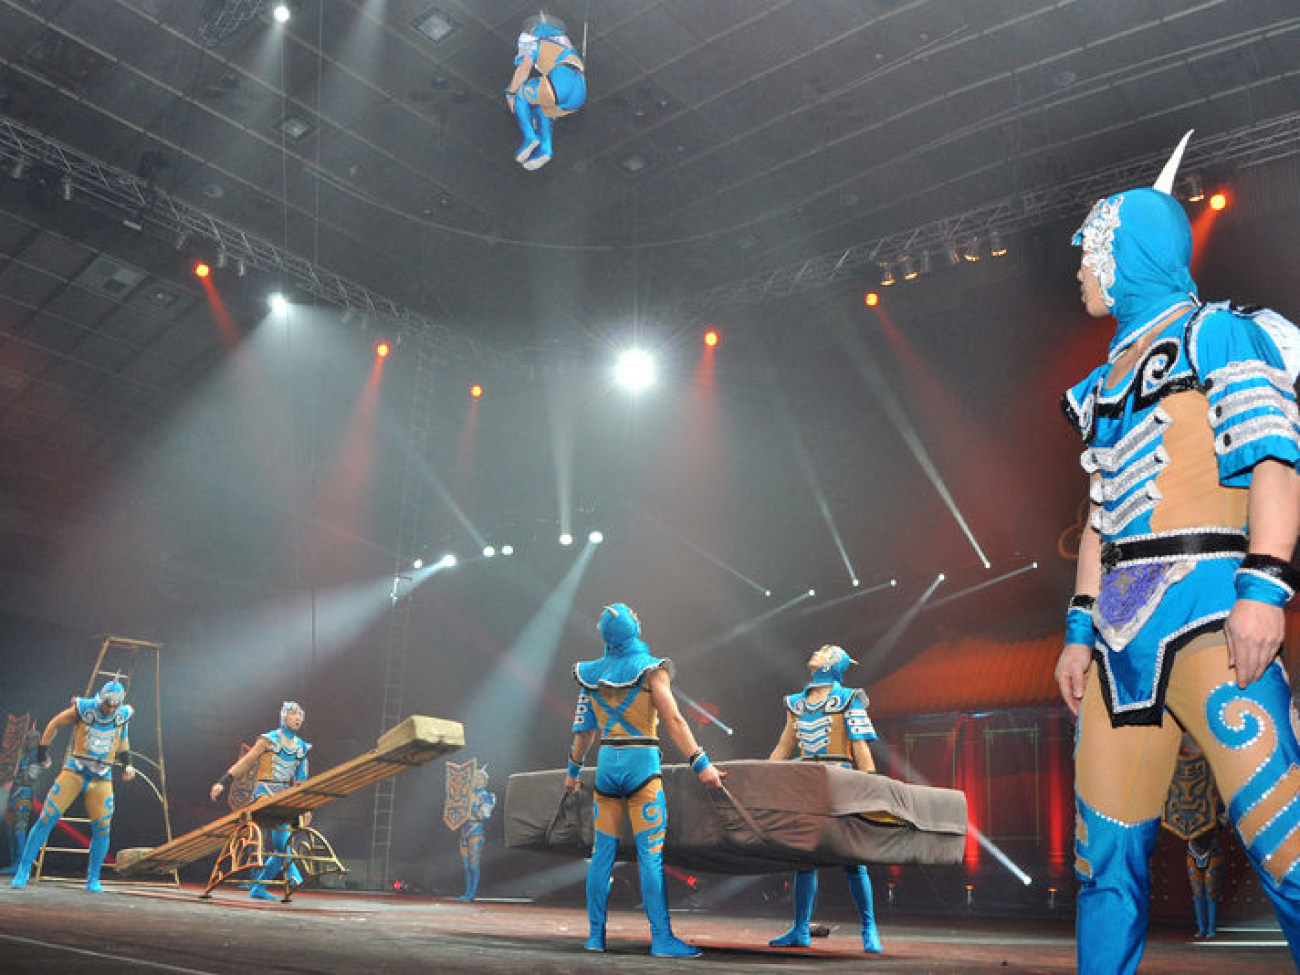 В Киев приехал французский цирк «Феникс»: генеральная репетиция, 26 декабря 2012г.